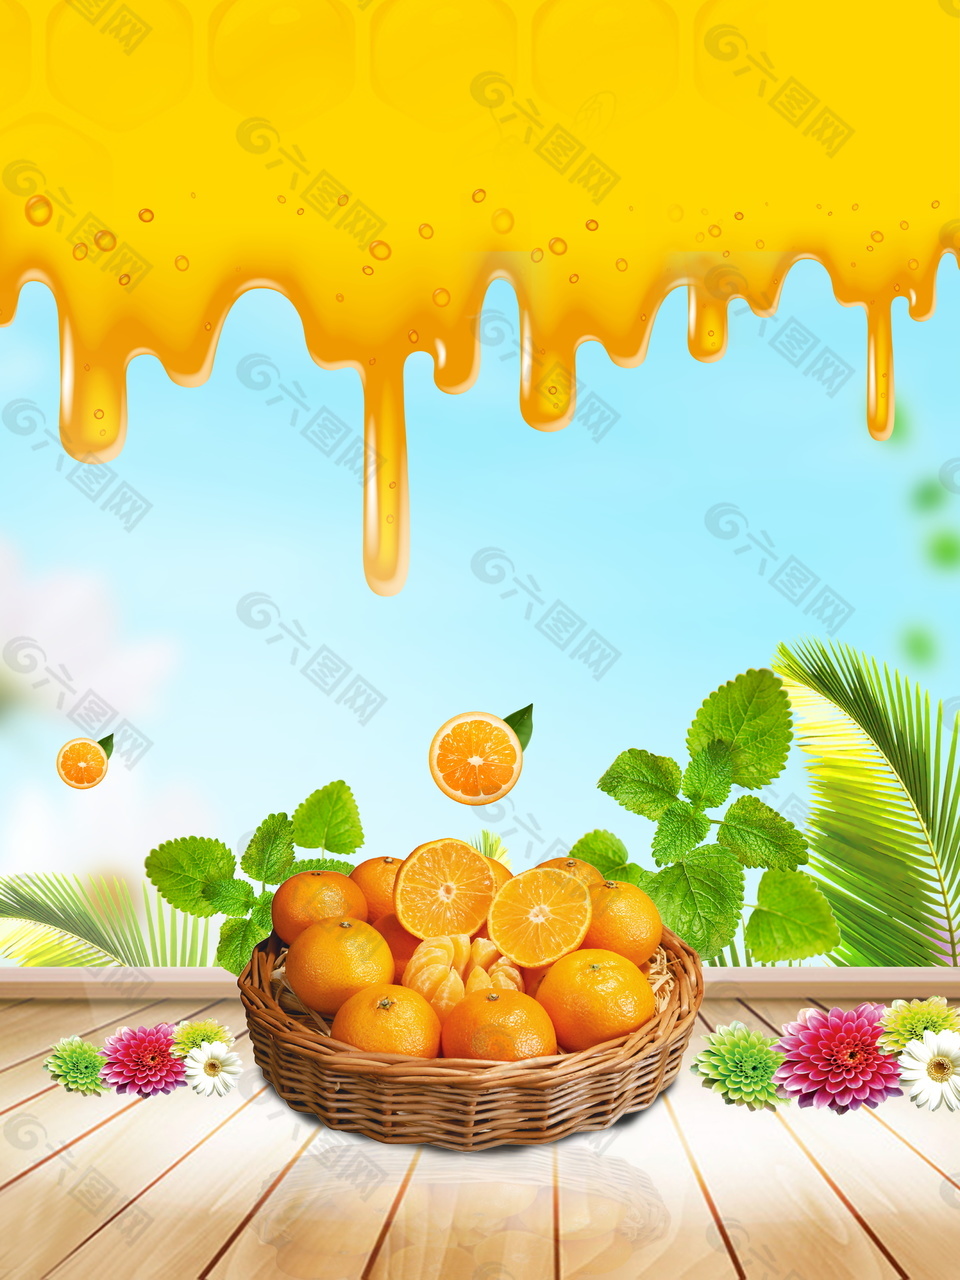 创意橙子饮料海报背景设计